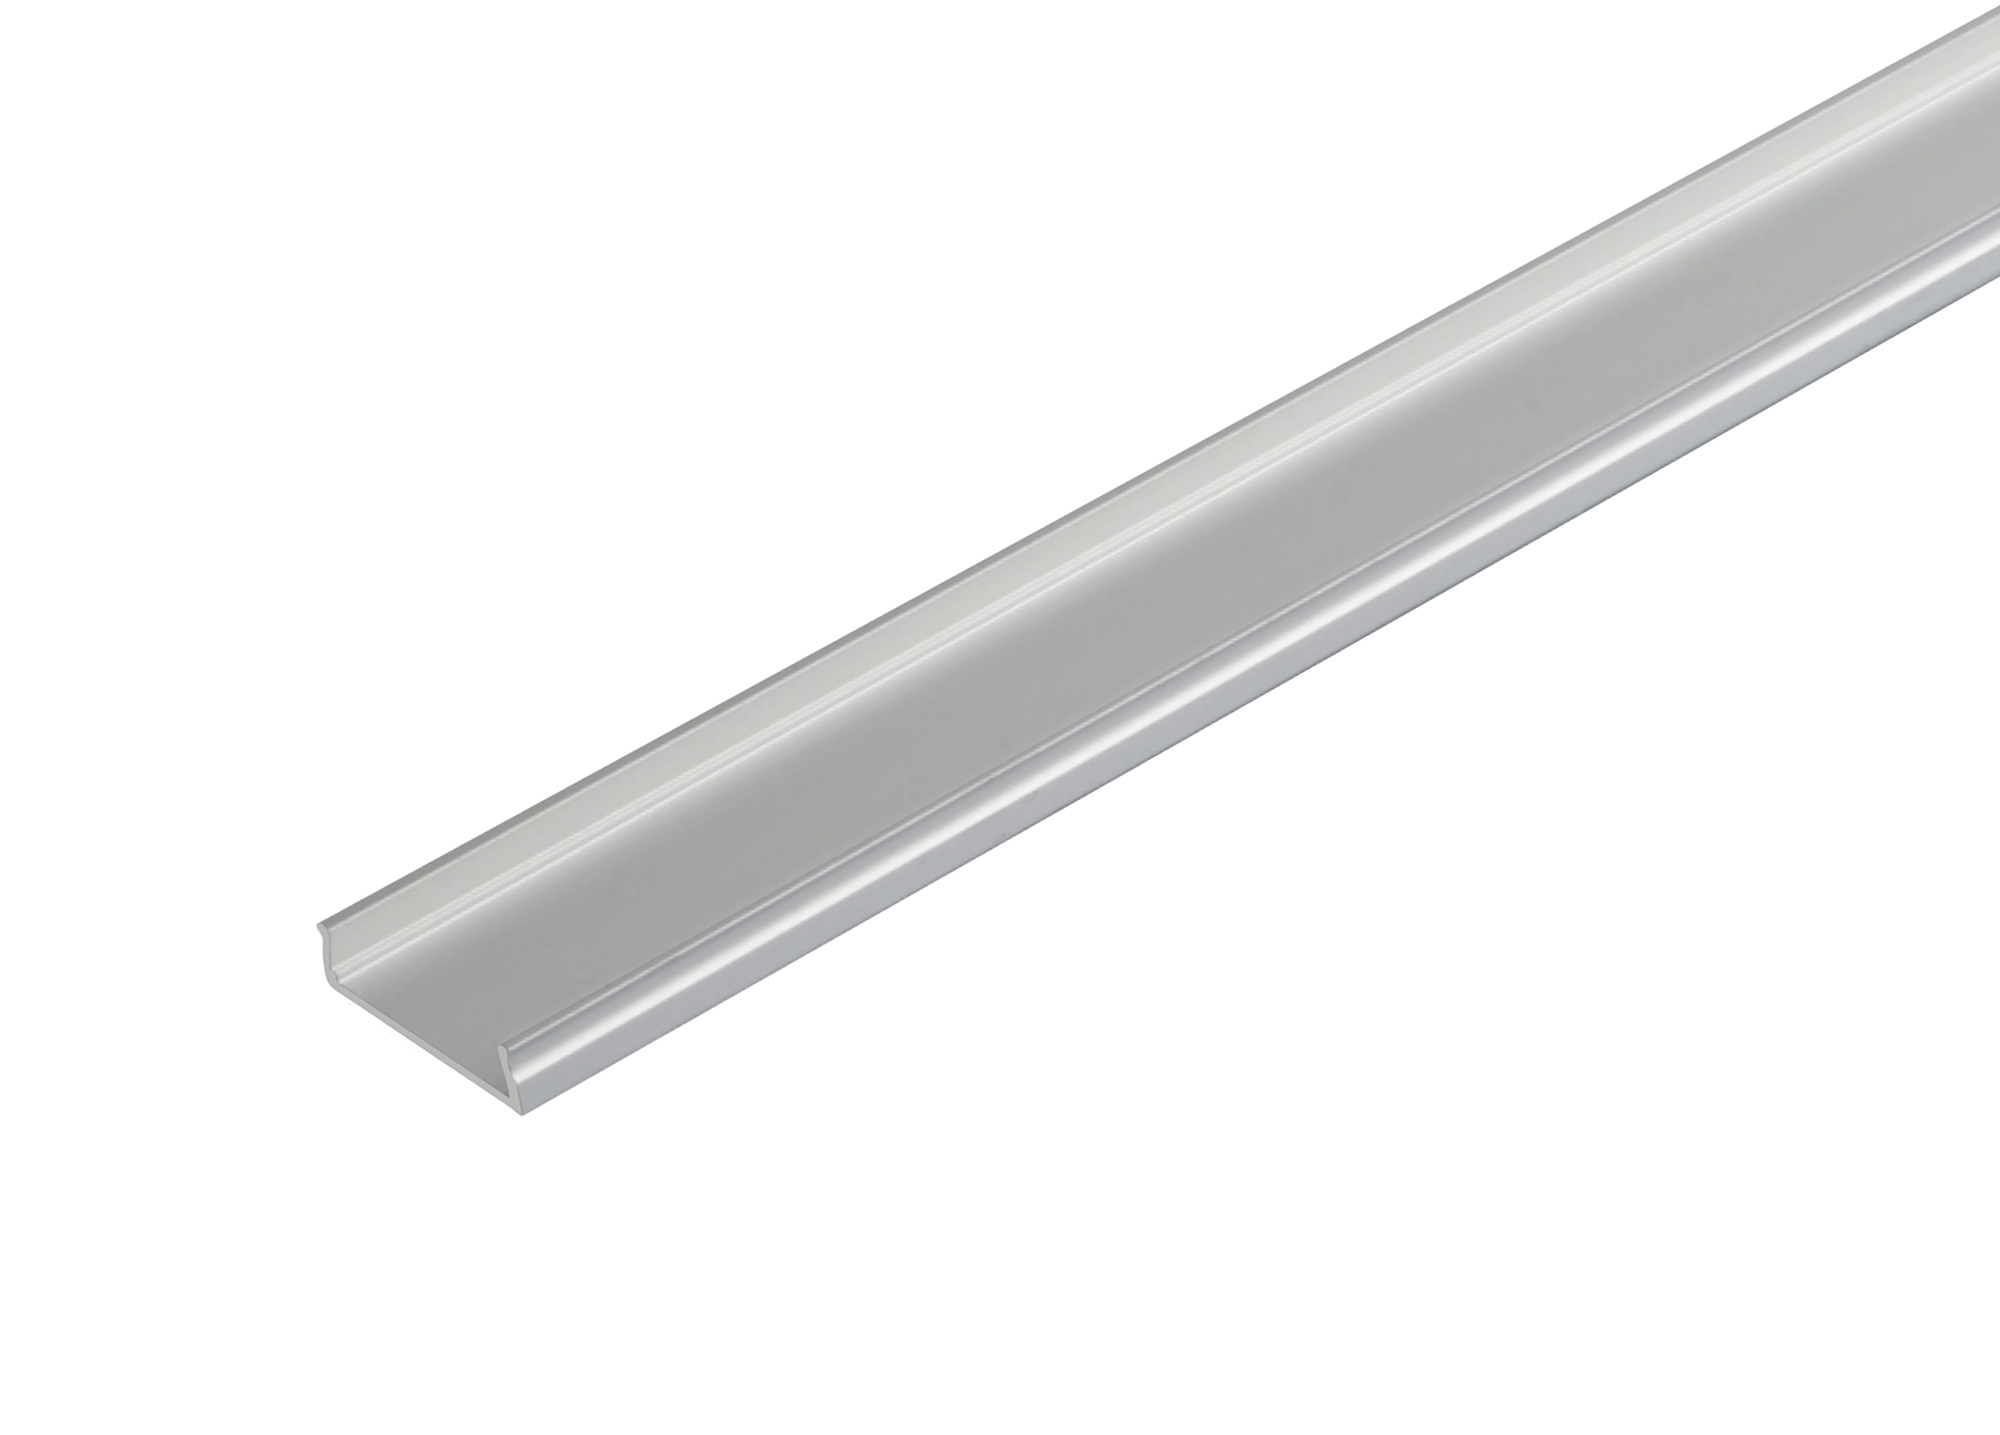 DA900049  3m Anodized Silver Aluminium Profile; Bendable; 18 x 6mm; Anodized Silver finish.